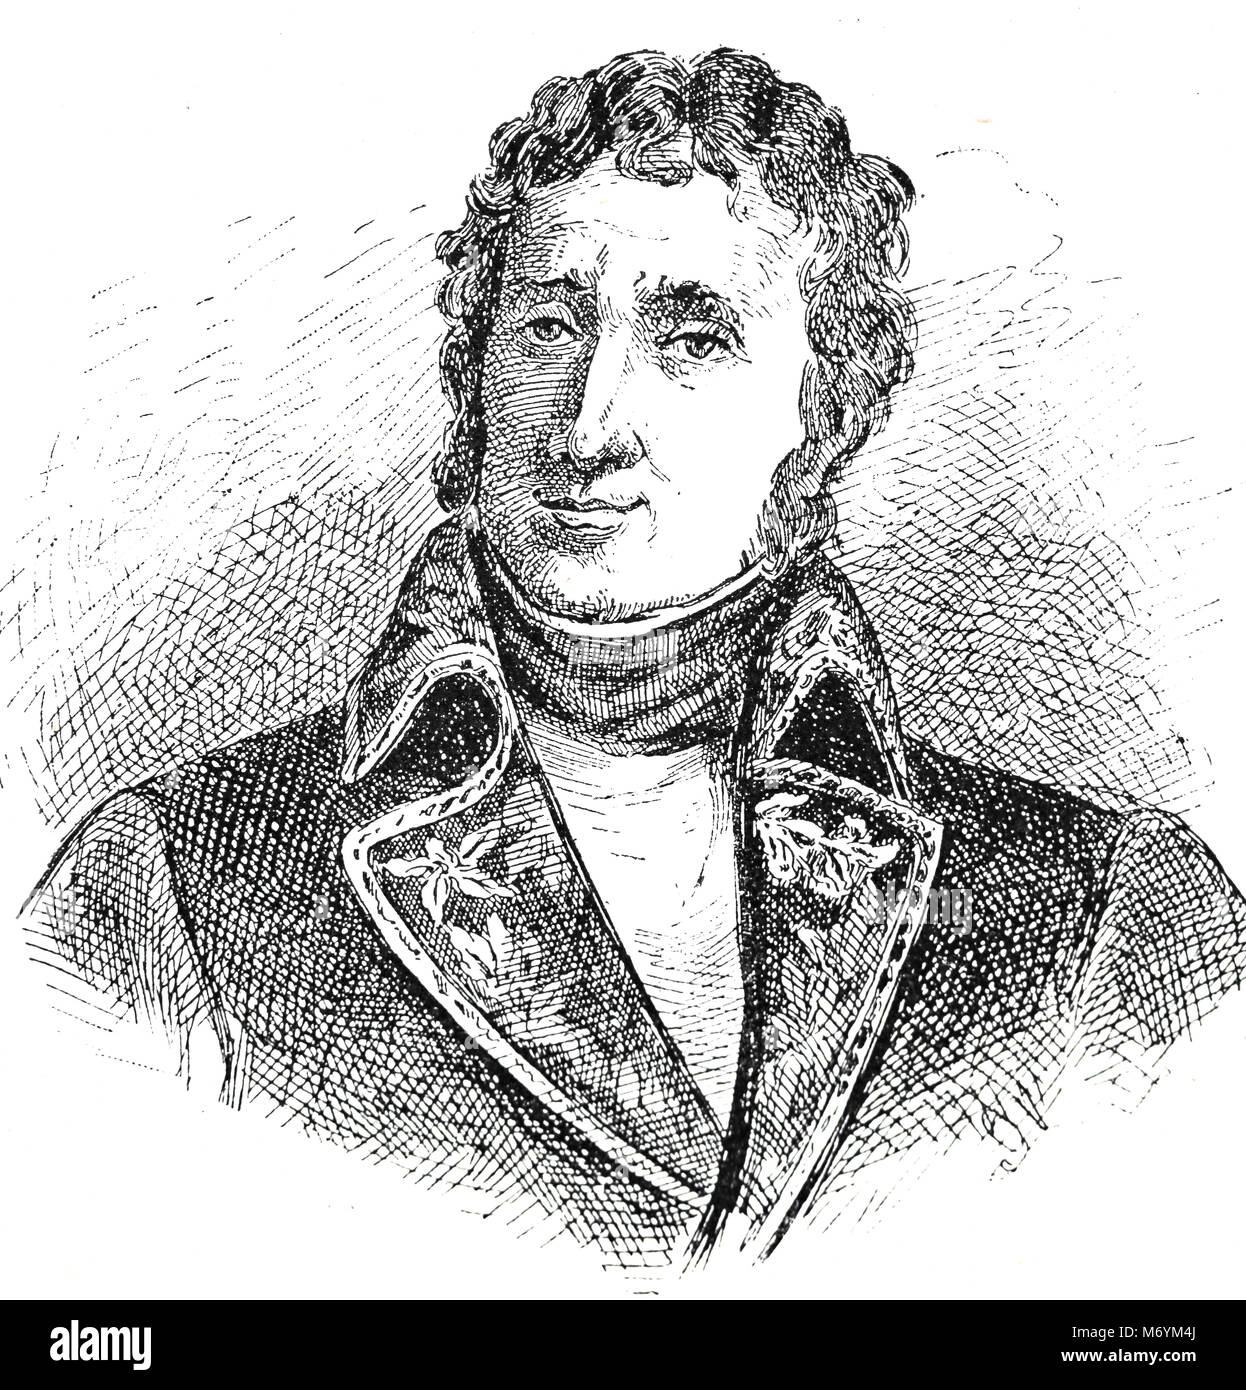 Andre Massena, 1. Duc de Rivoli (1758-1817). Der französische Befehlshaber während der Revolutionären und Napoleonischen Kriege. Porträt. Stockfoto